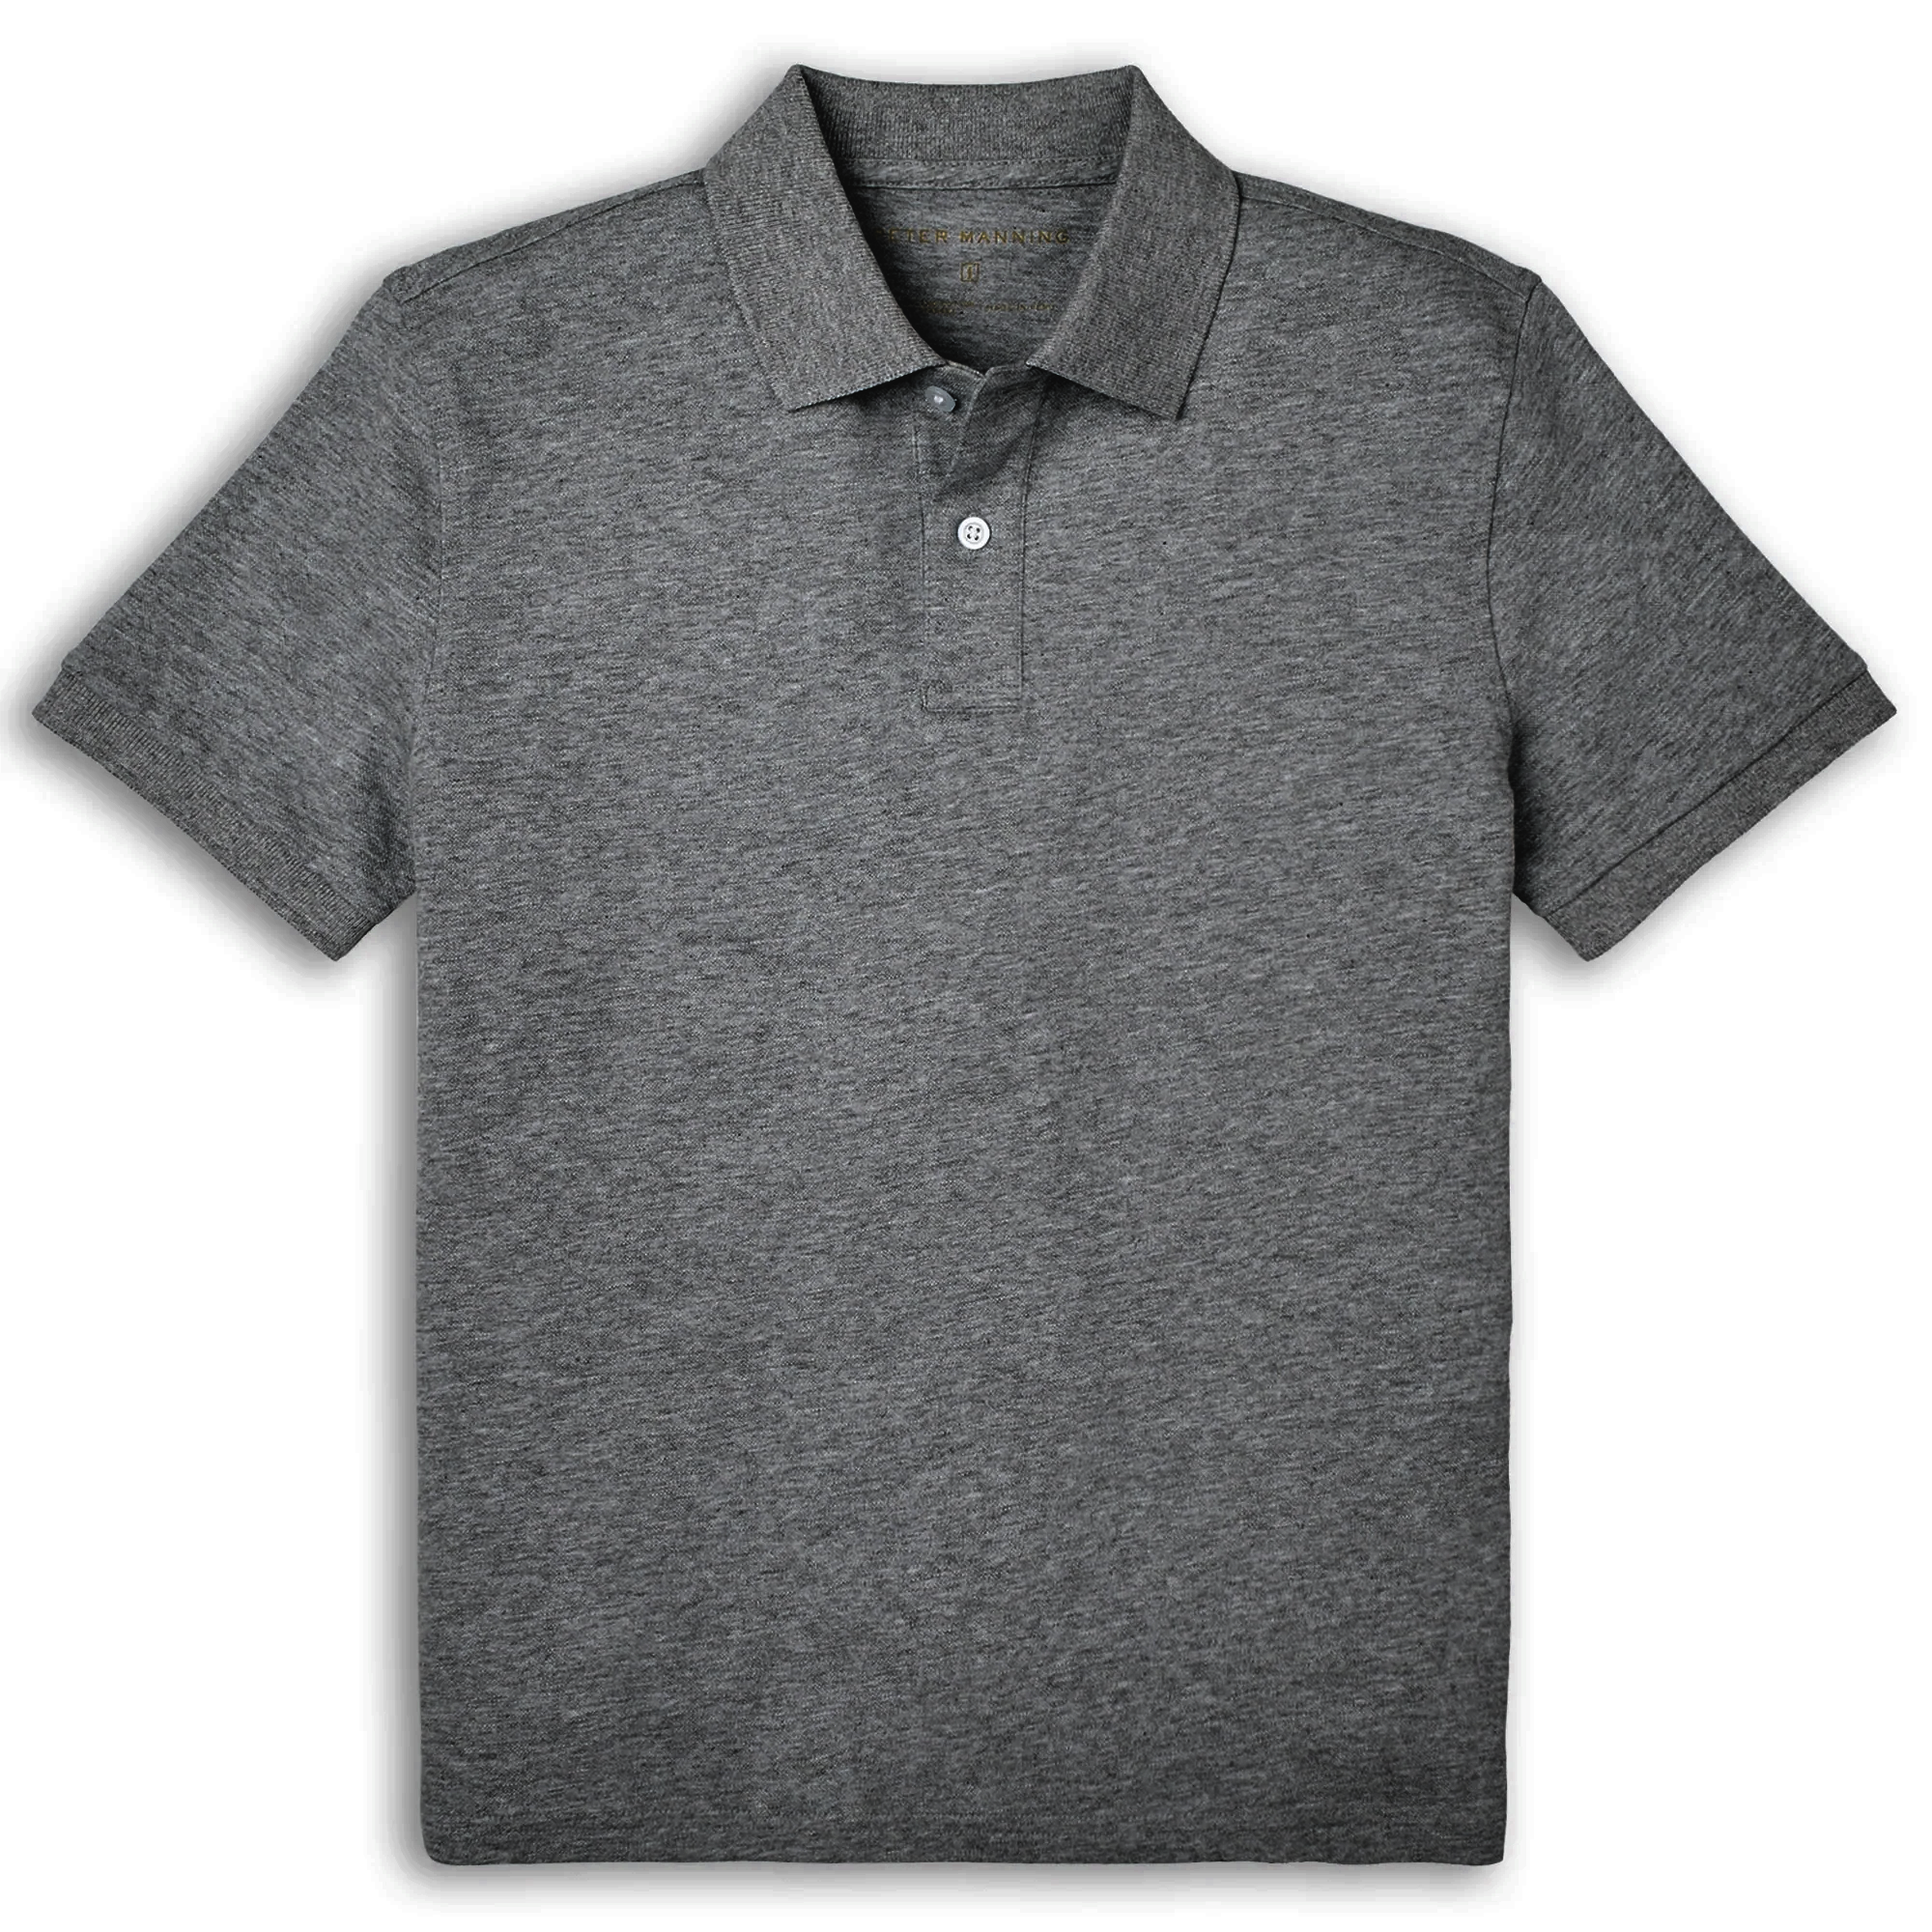 James Polo Shirt - Charcoal